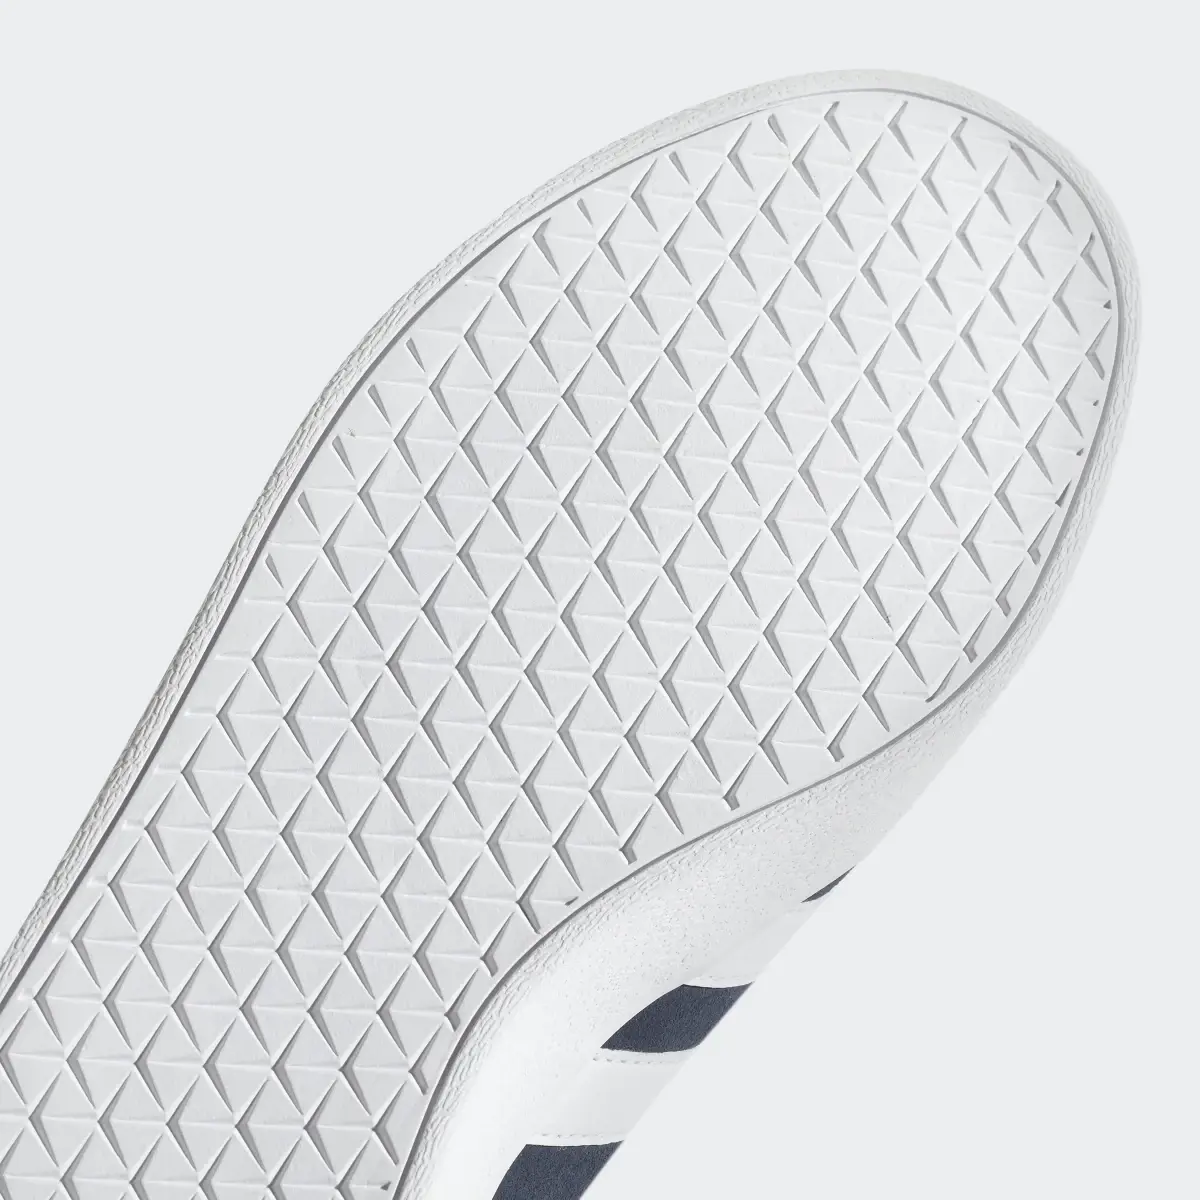 Adidas VL Court 2.0 Schuh. 3